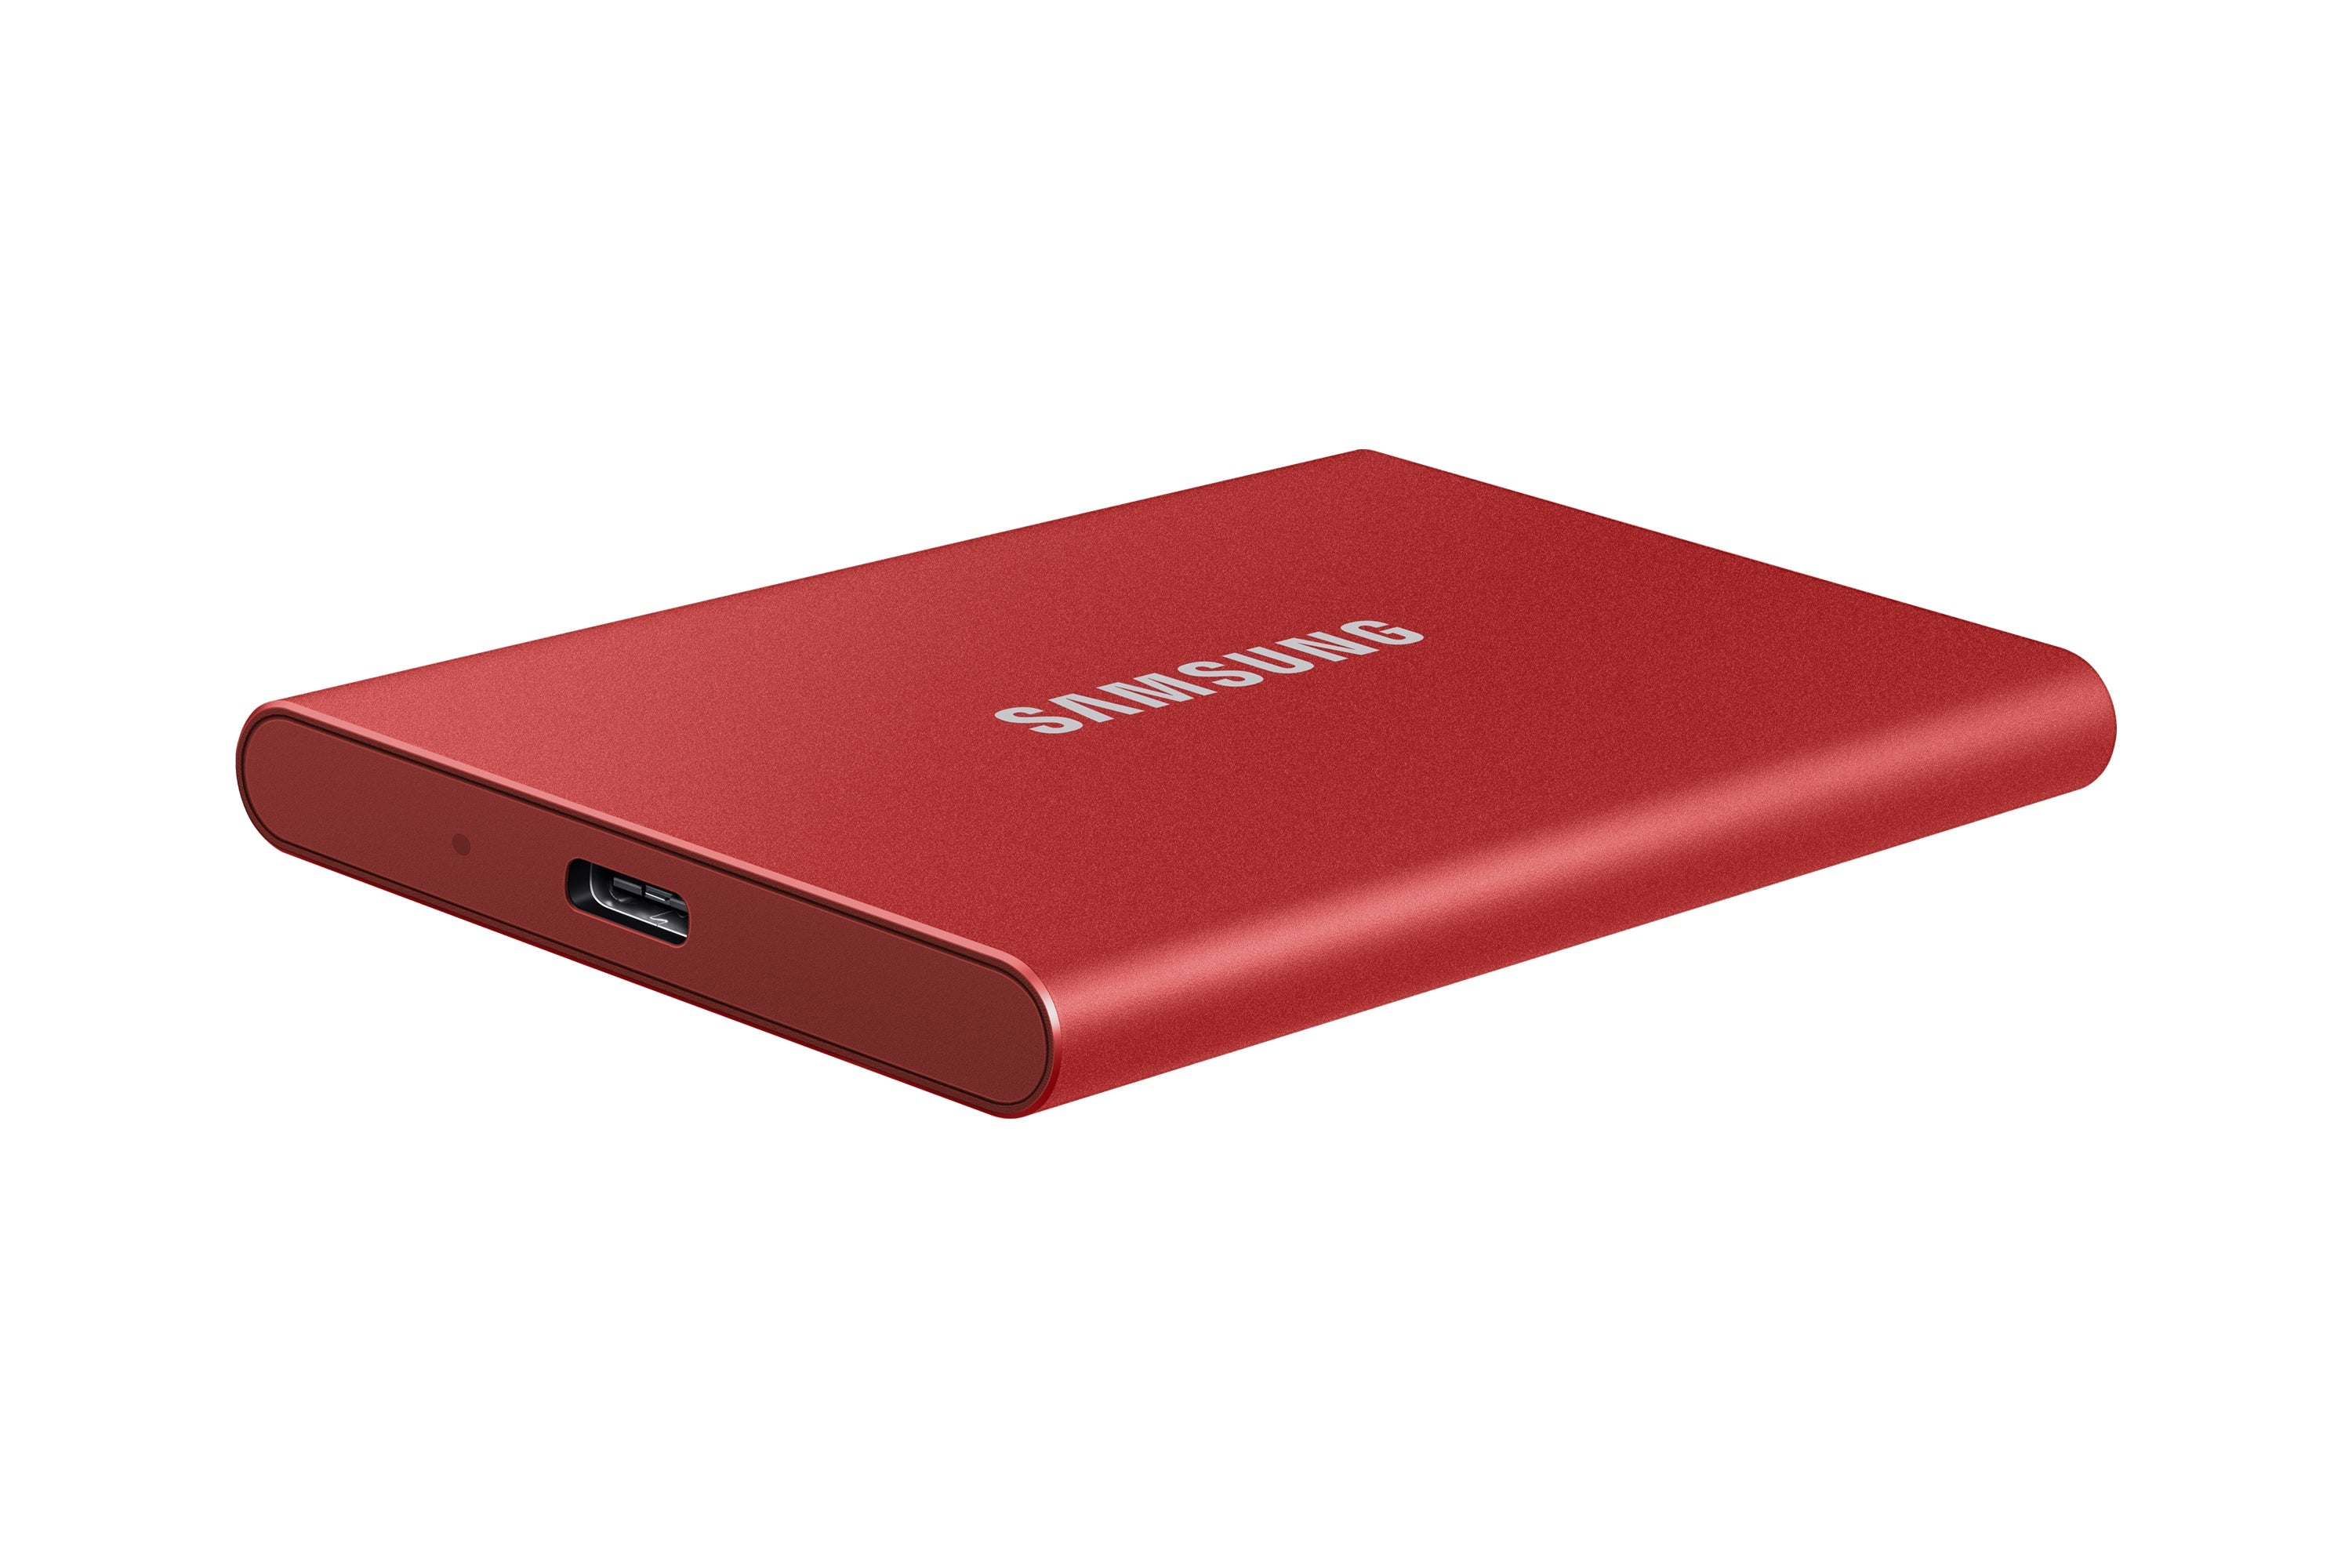 Samsung Portable SSD T7 SSD MU-PC2T0R 2TB USB 3.2 Gen 2